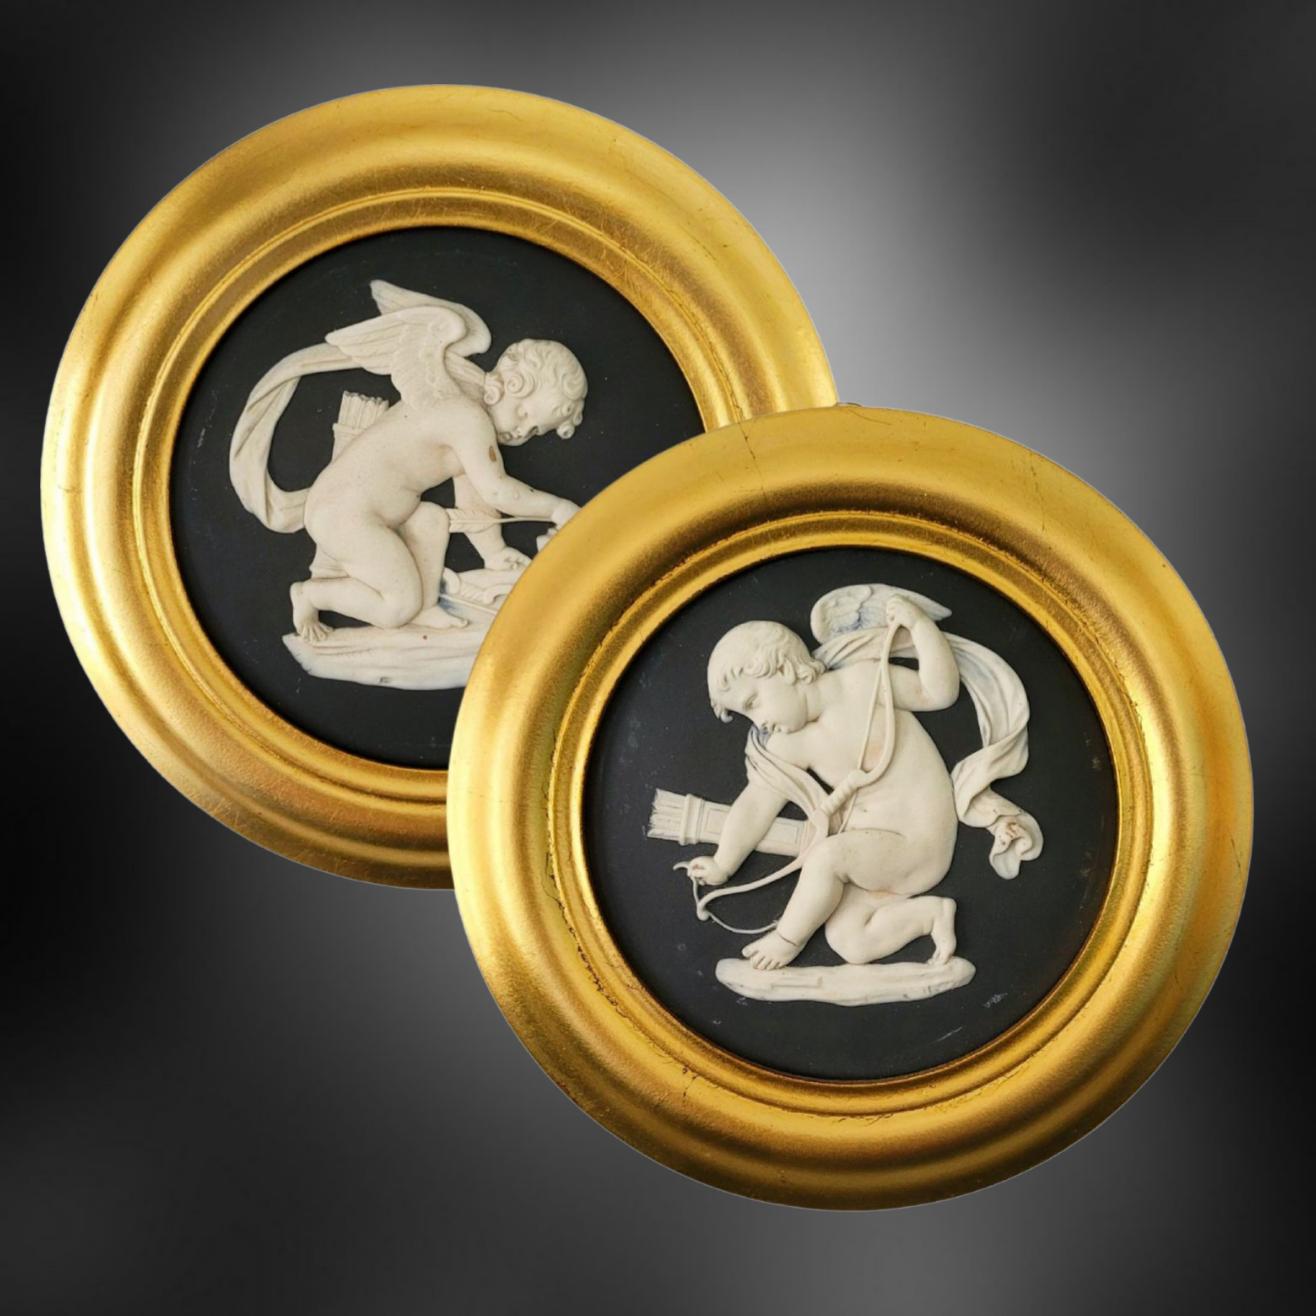 Exceptionnelle paire de rondelles en jaspe noir, décorées de deux images de Cupidon : La première aiguisant ses flèches ; la seconde, de lui tendant son arc.

Cupidon est un personnage populaire de la mythologie romaine antique, généralement